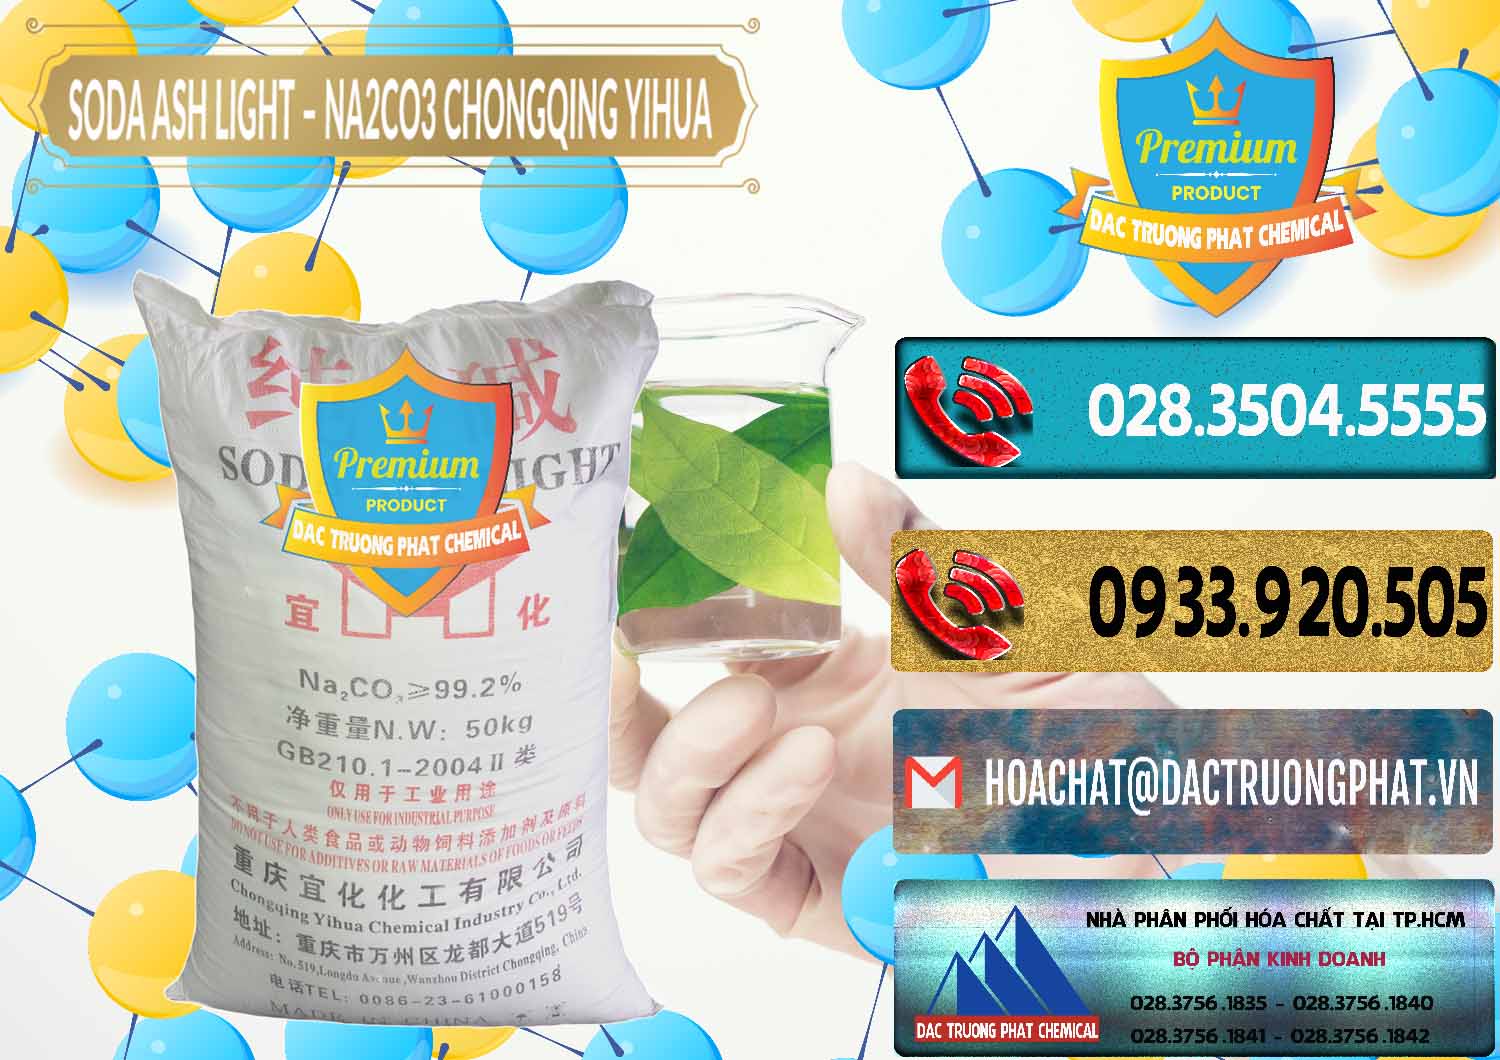 Nơi nhập khẩu - bán Soda Ash Light - NA2CO3 Chongqing Yihua Trung Quốc China - 0129 - Nơi chuyên kinh doanh - phân phối hóa chất tại TP.HCM - hoachatdetnhuom.com